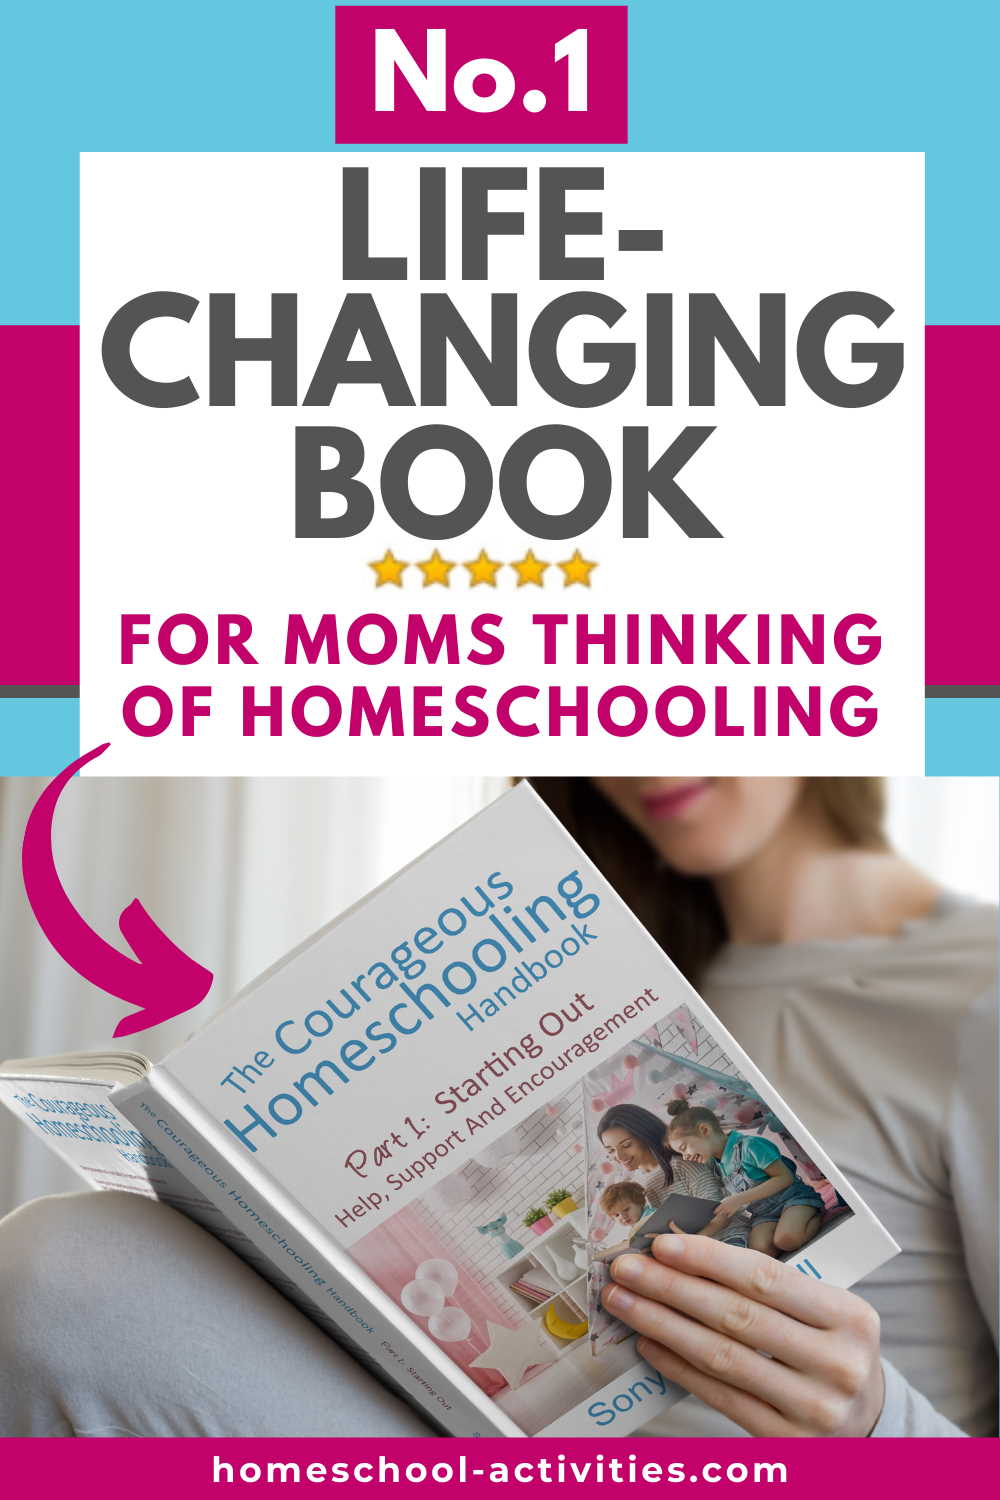 The Courageous Homeschooling Handbook